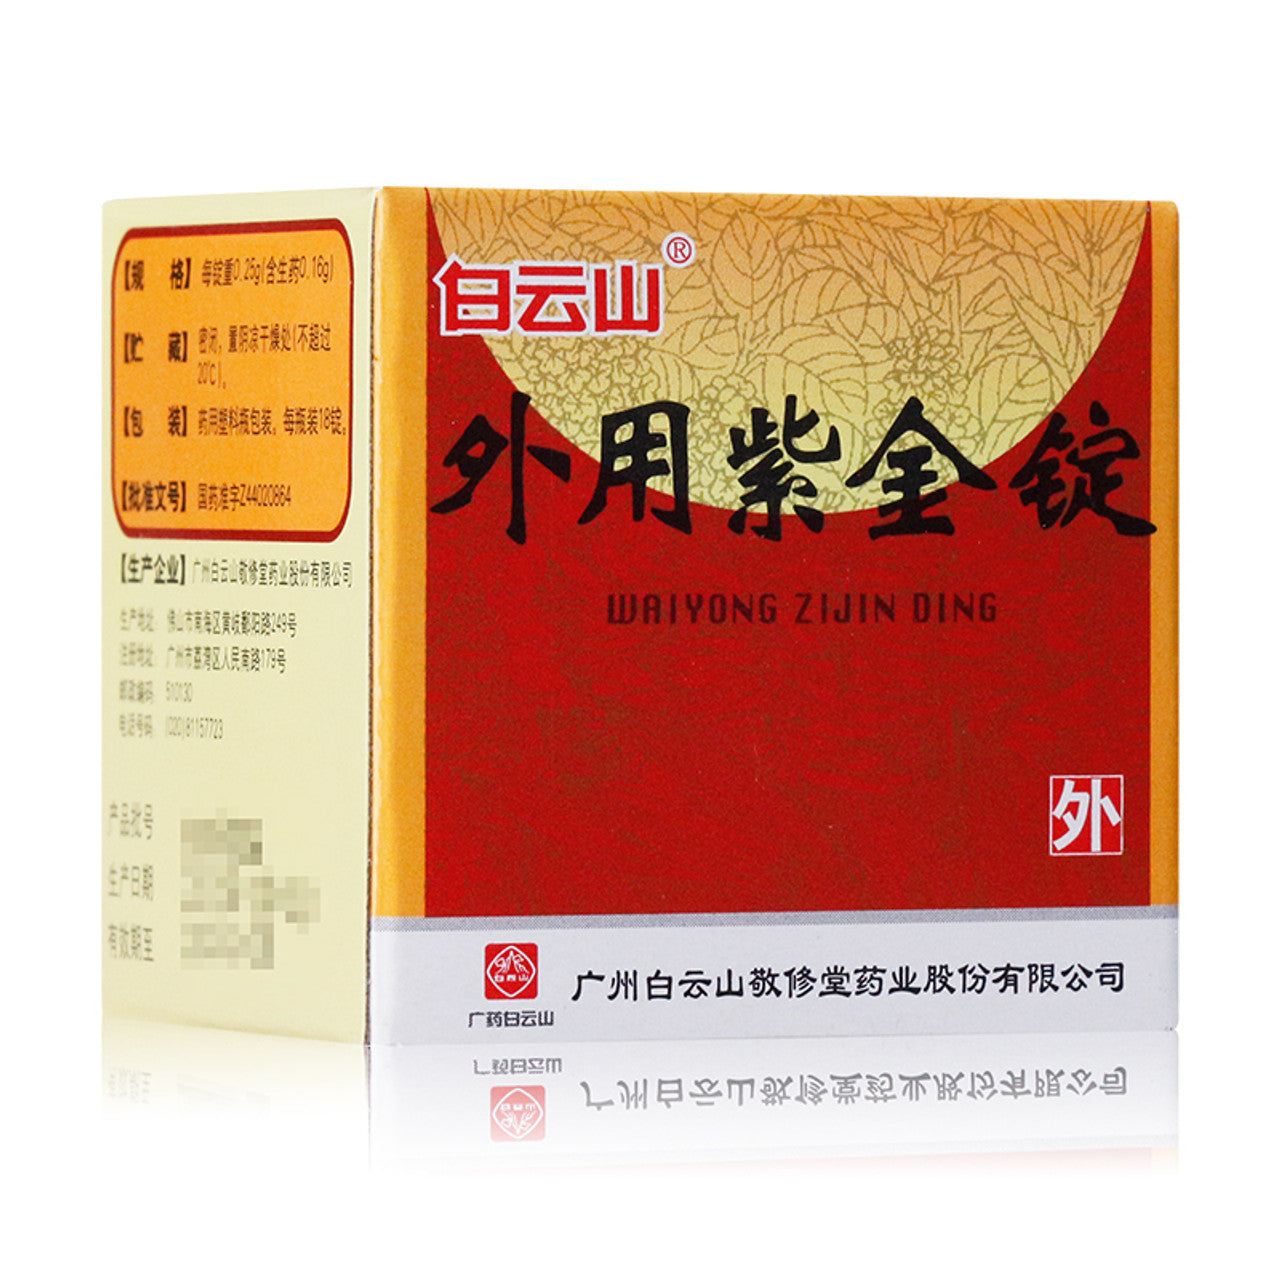 Chinese Herb. for External Use. WaiYong ZiJin Ding / Wai Yong Zi Jin Ding / Topical Purple Gold Ingot